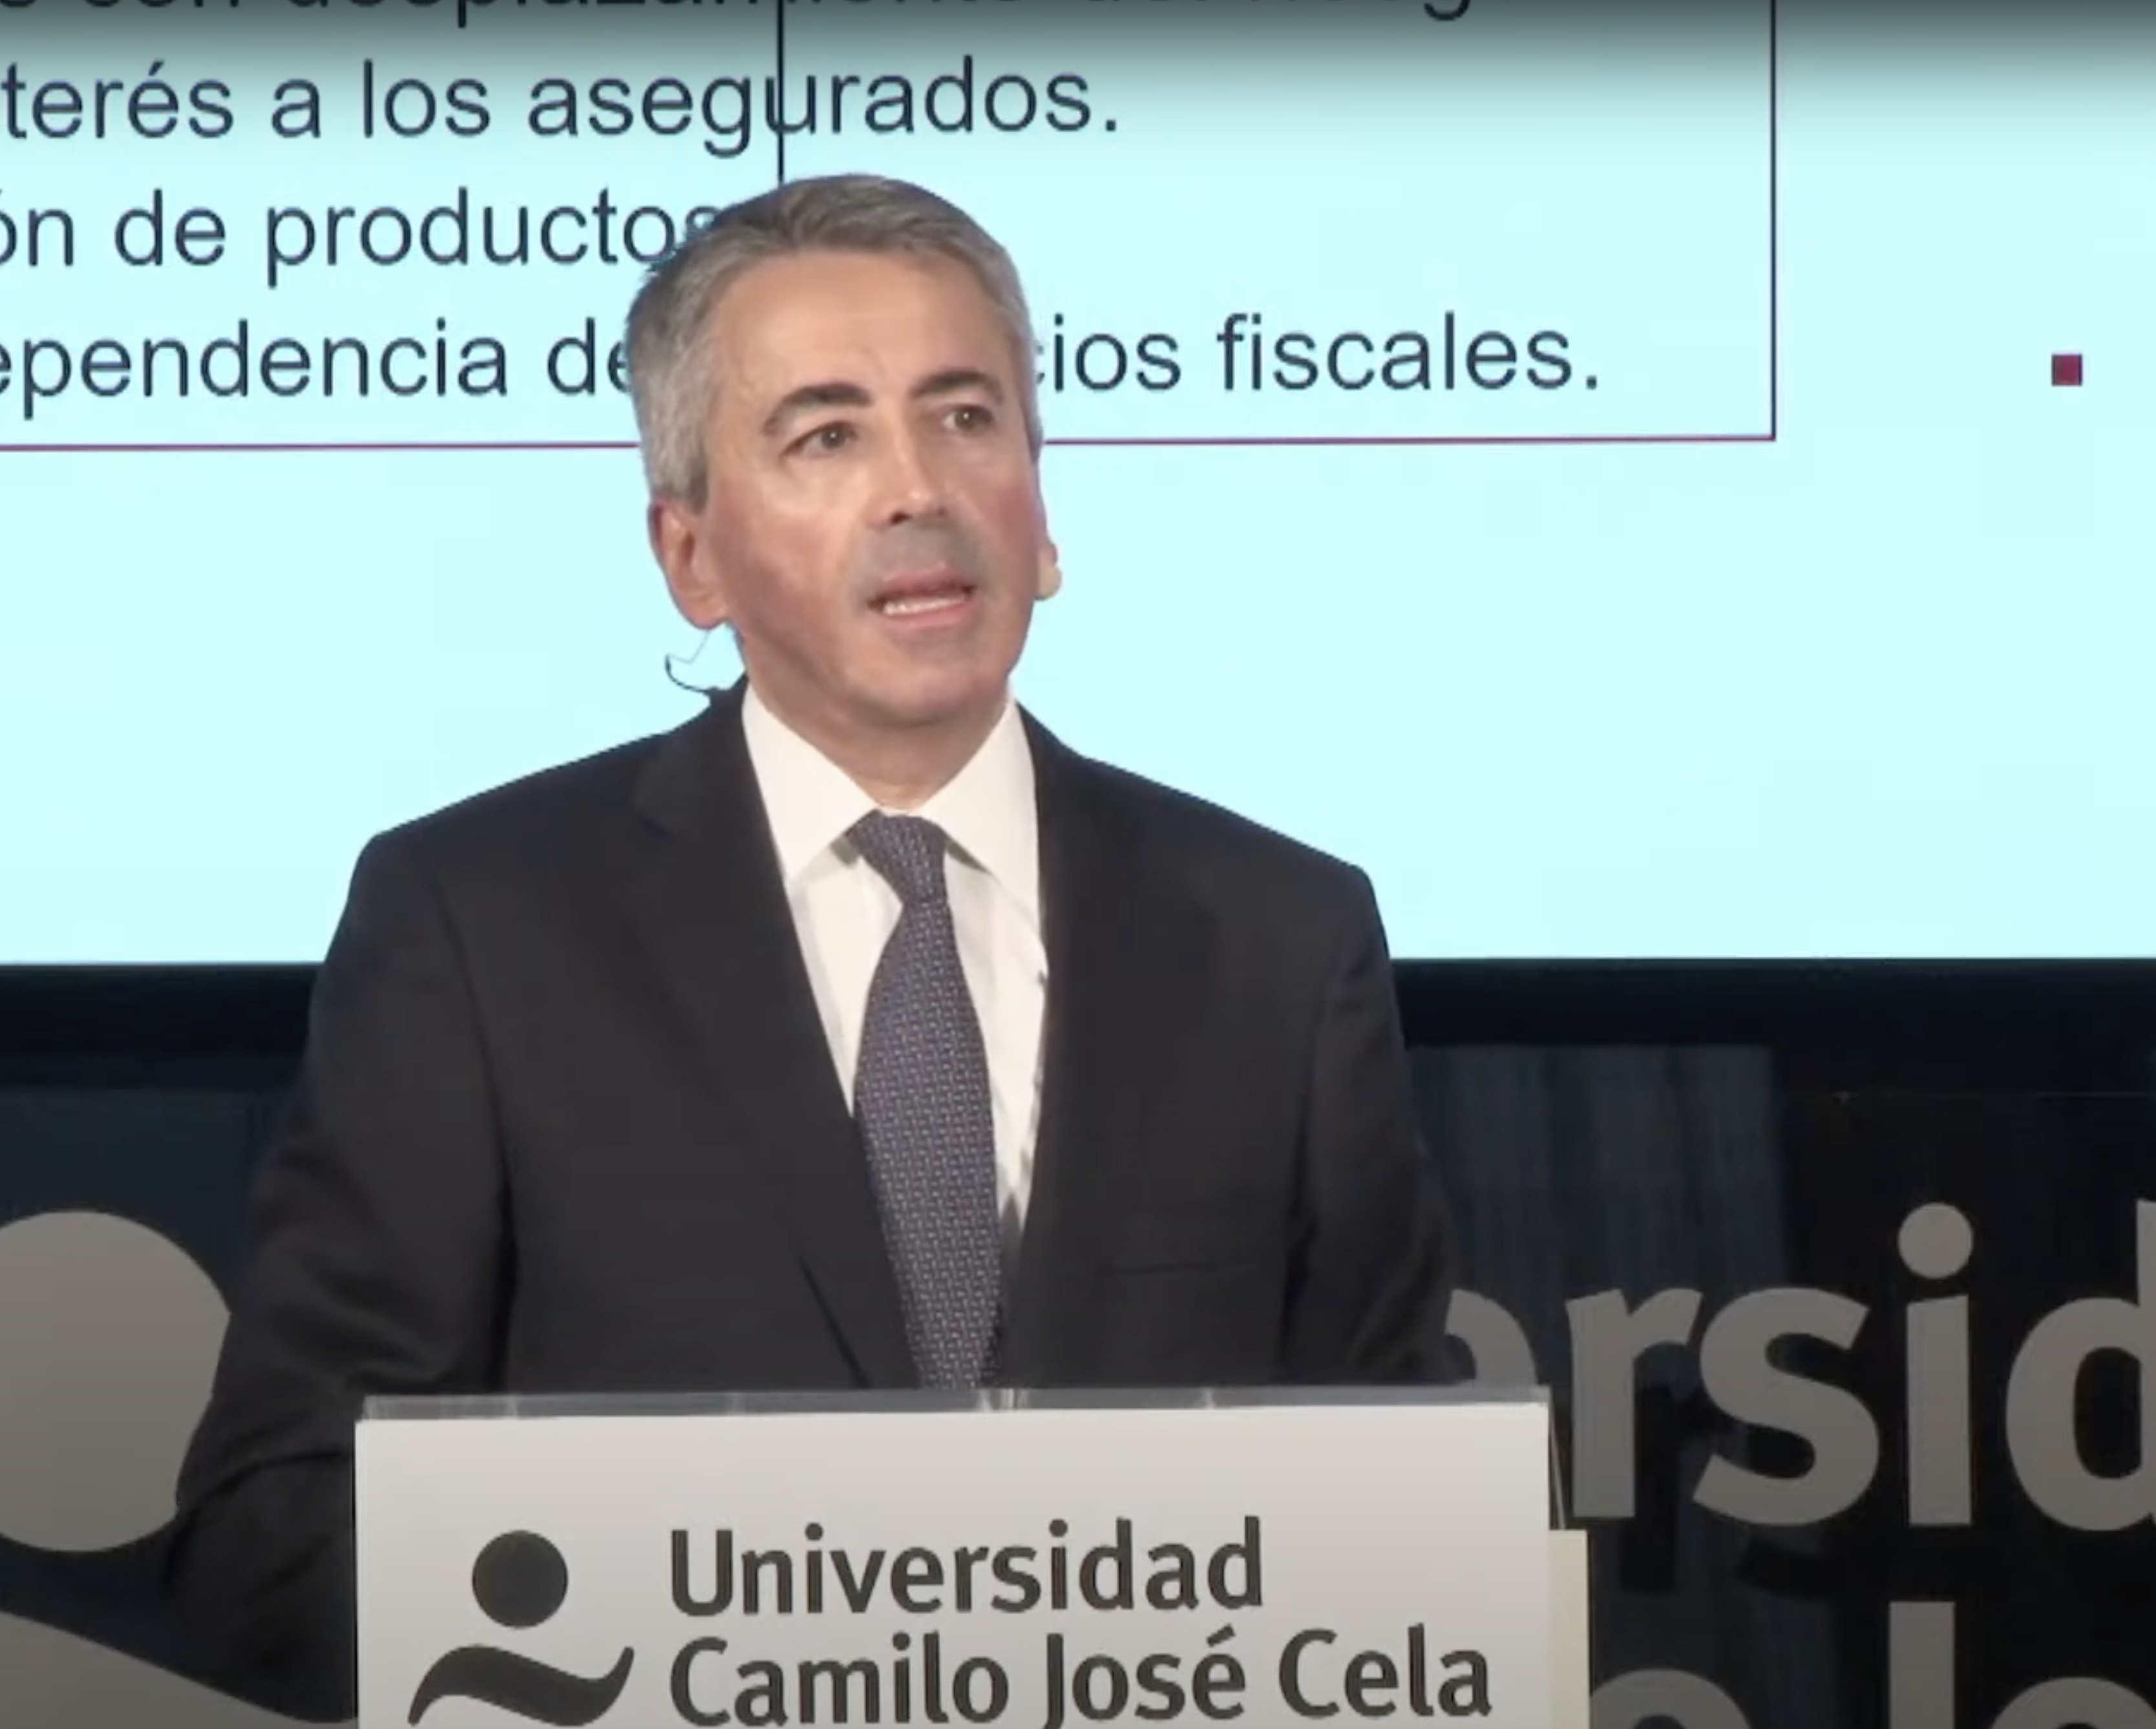 Álvarez Camiña: "Los seguros de vida-ahorro deberán depender menos de incentivos fiscales"